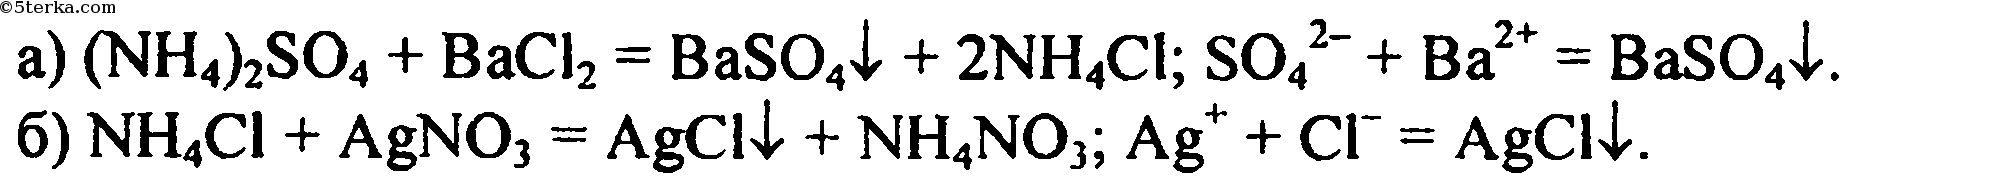 Раствор хлорида аммония с раствором нитрата серебра